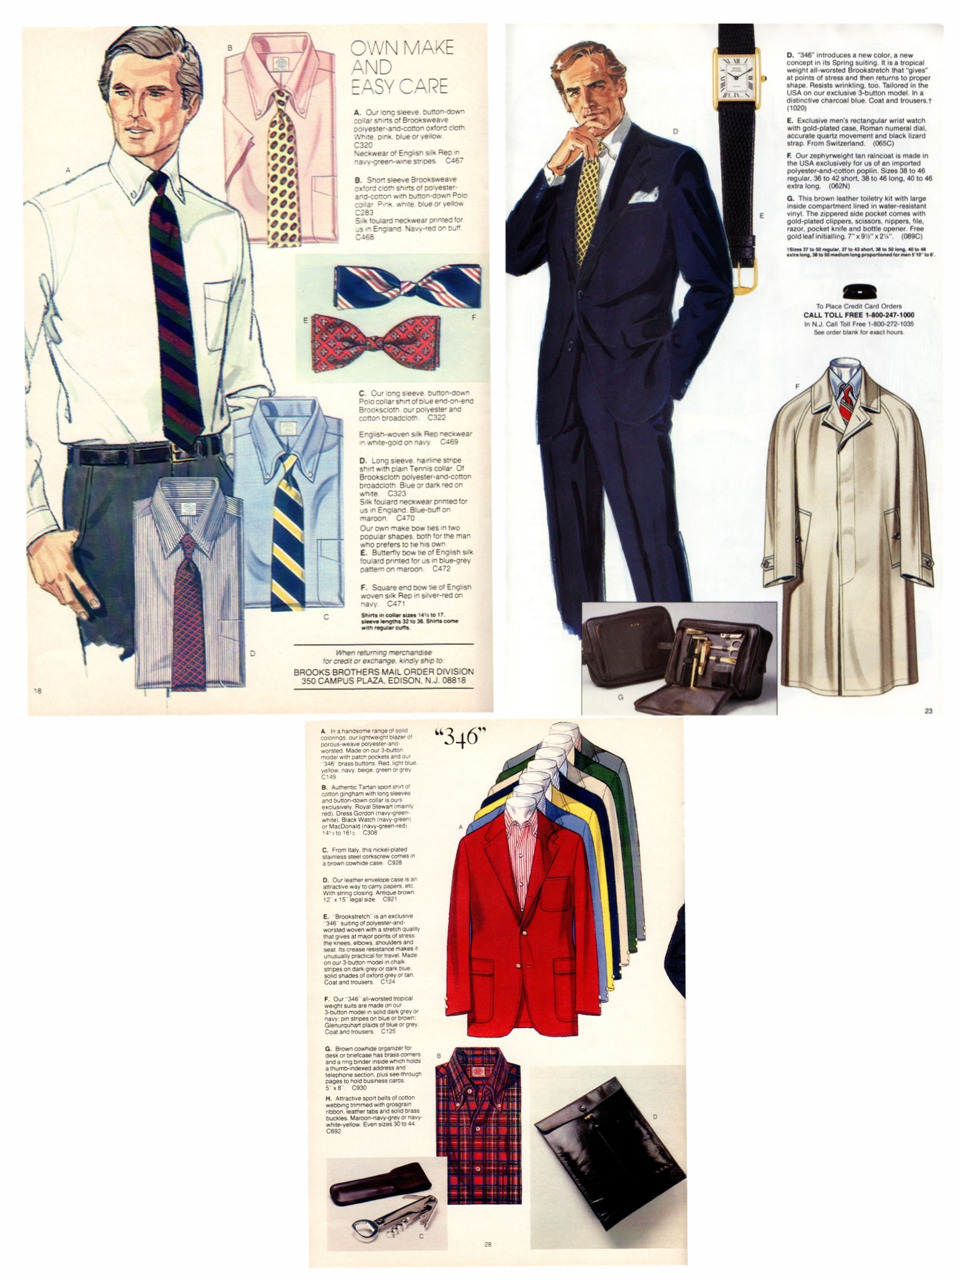 Vintage Brooks Brothers catalog images via Heavy Tweed Jacket..